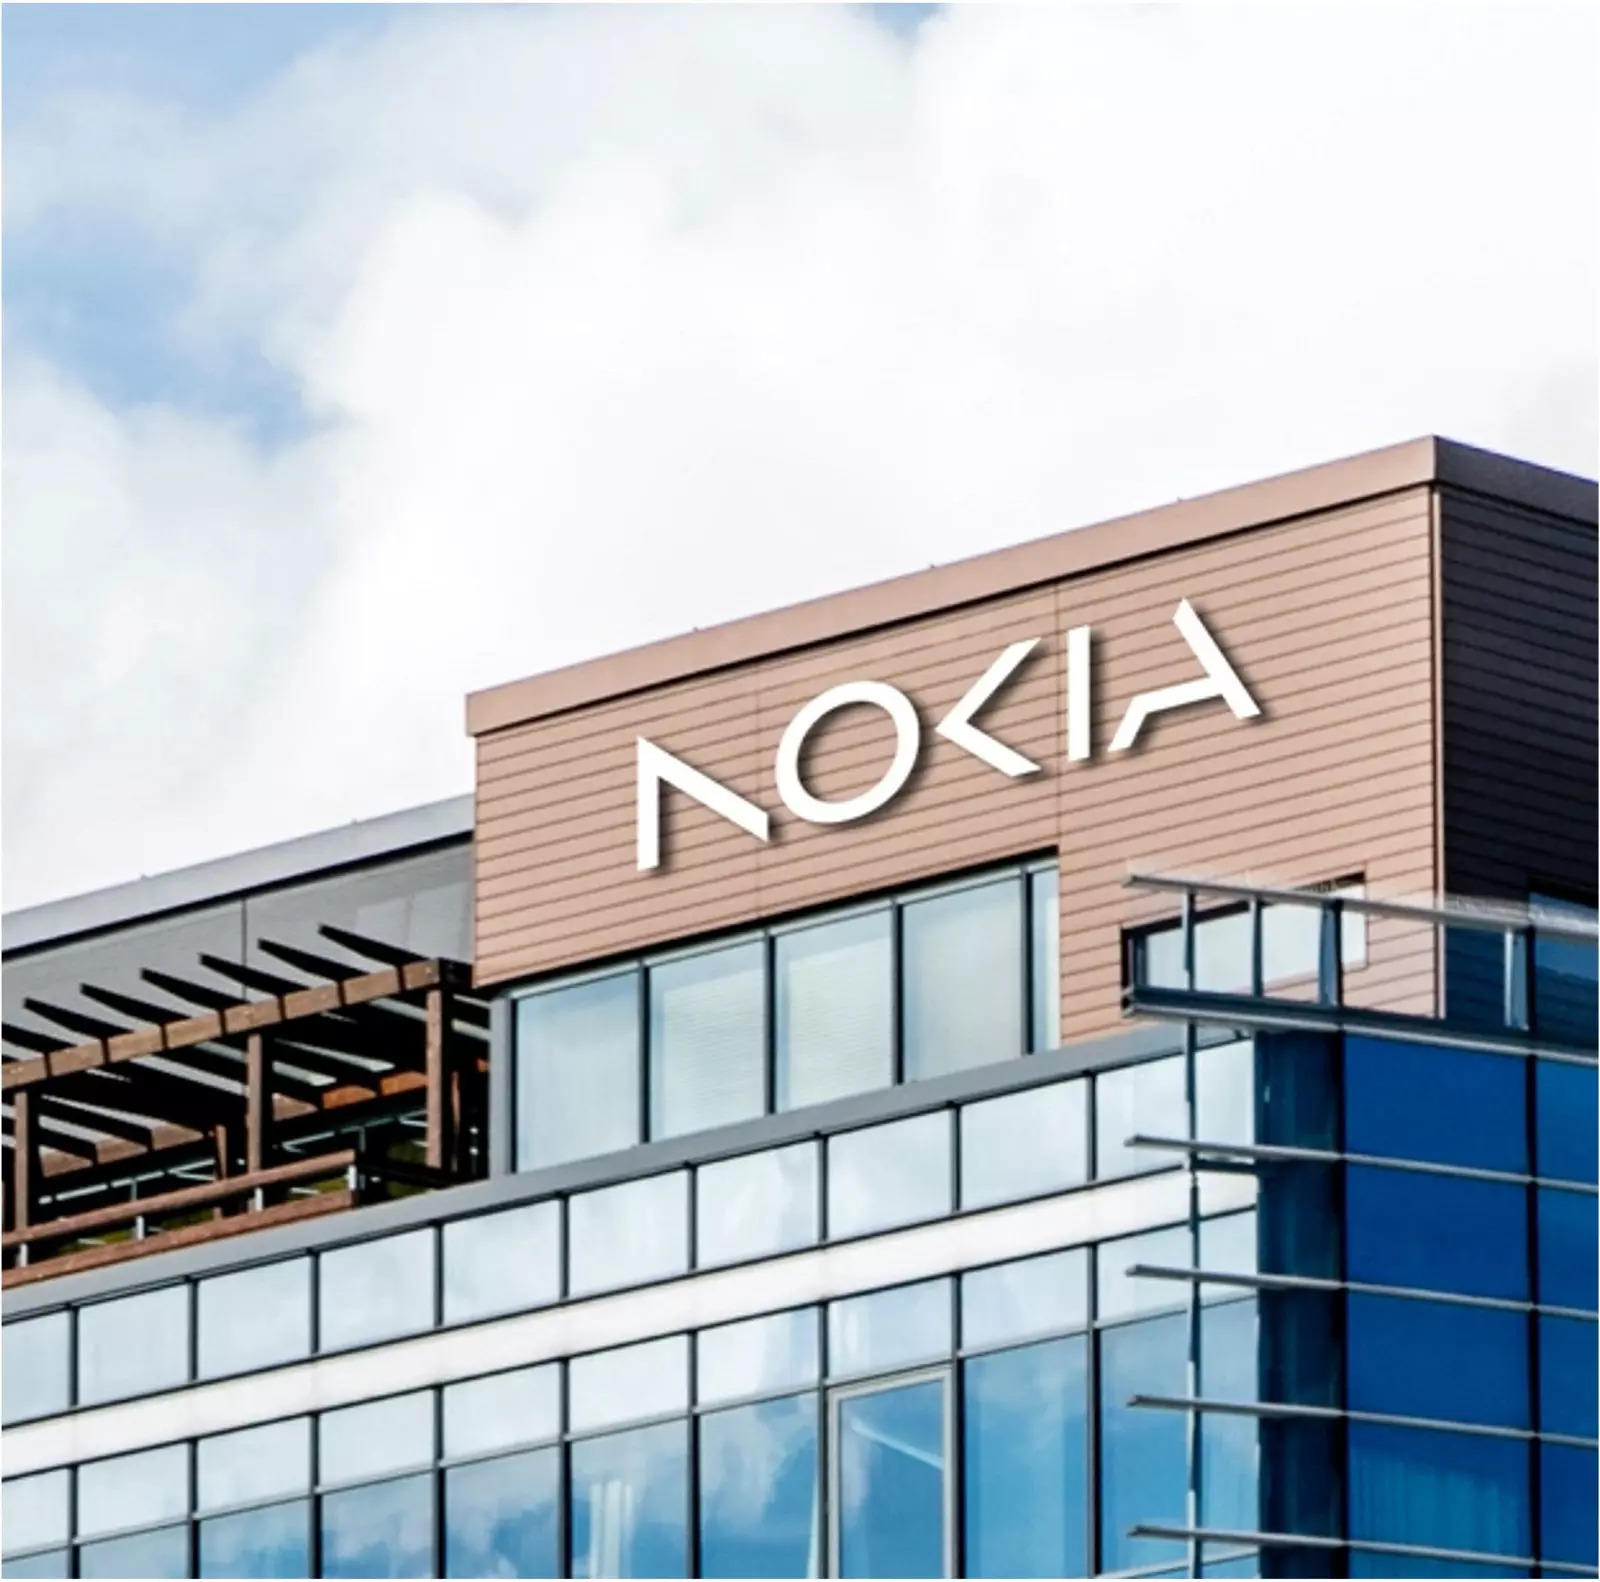 Nokia changes iconic logo to signal strategy shift, Telecom News, ET Telecom